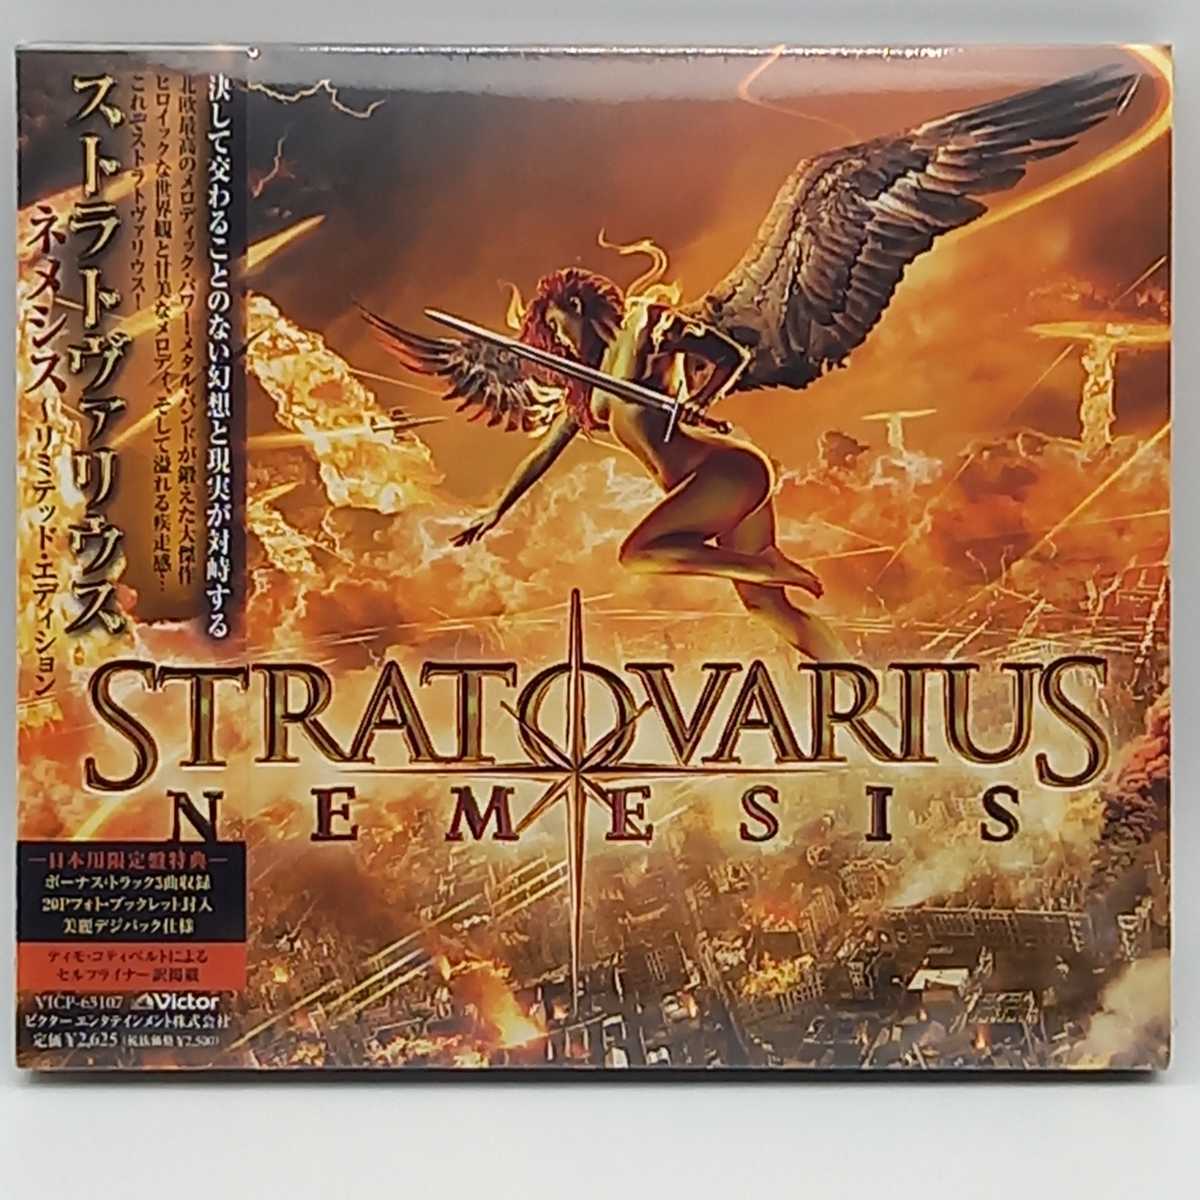 STRATOVARIUS (3CD+DVD+カセット+Tシャツ)ストラトバリウス